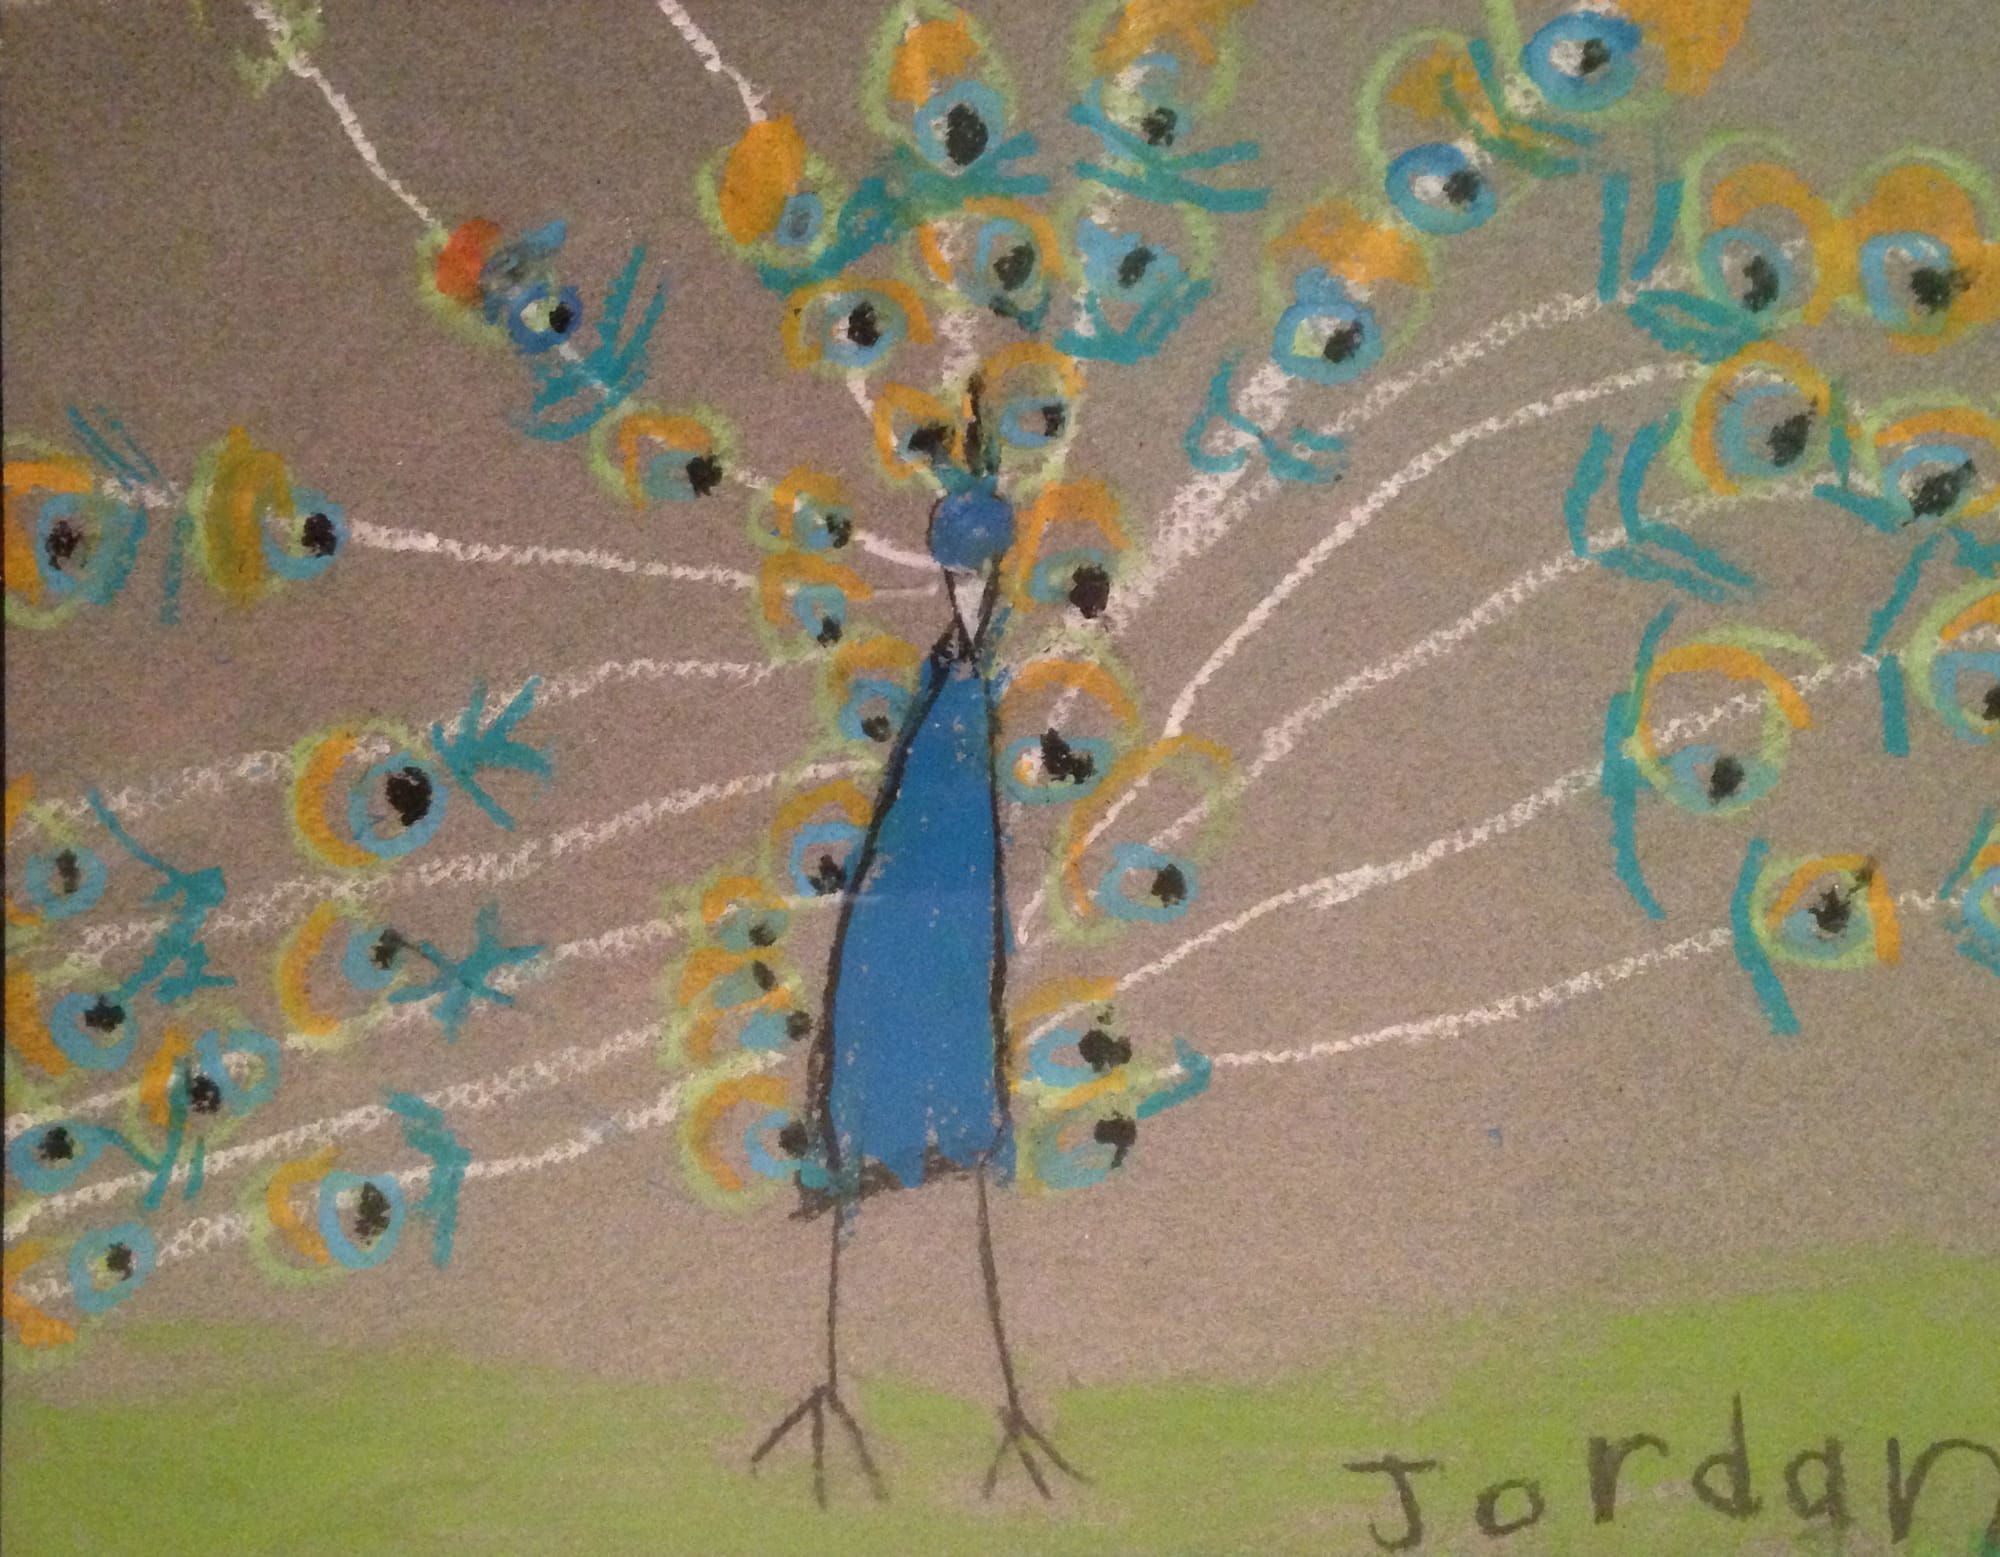 Peacock by Jordan age 5